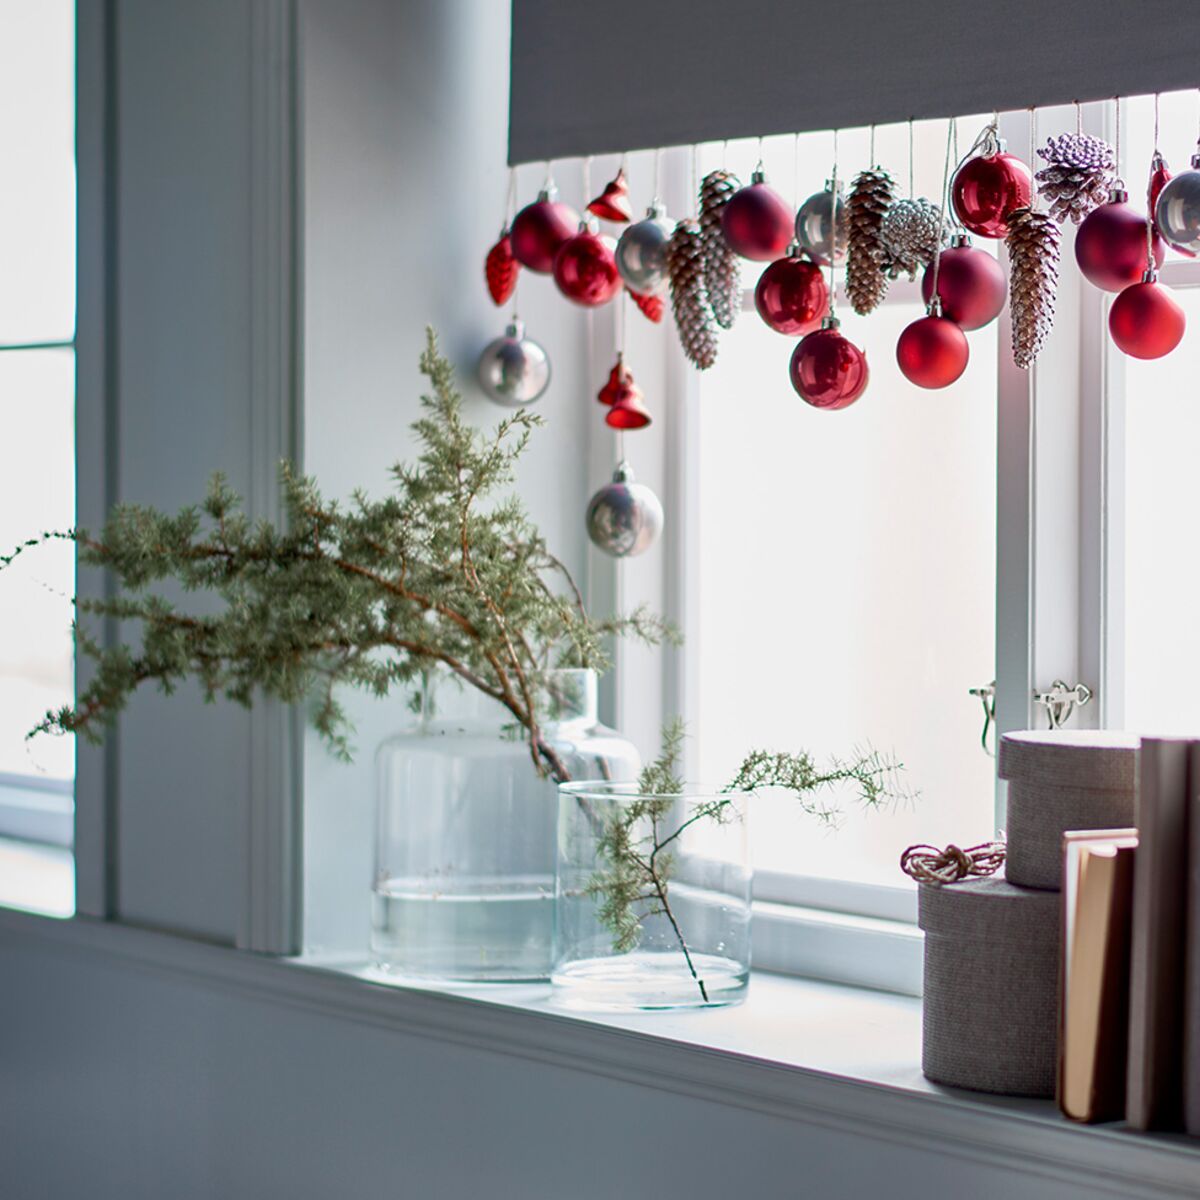 Déco de Noël : 3 idées pour les fenêtres : Femme Actuelle Le MAG